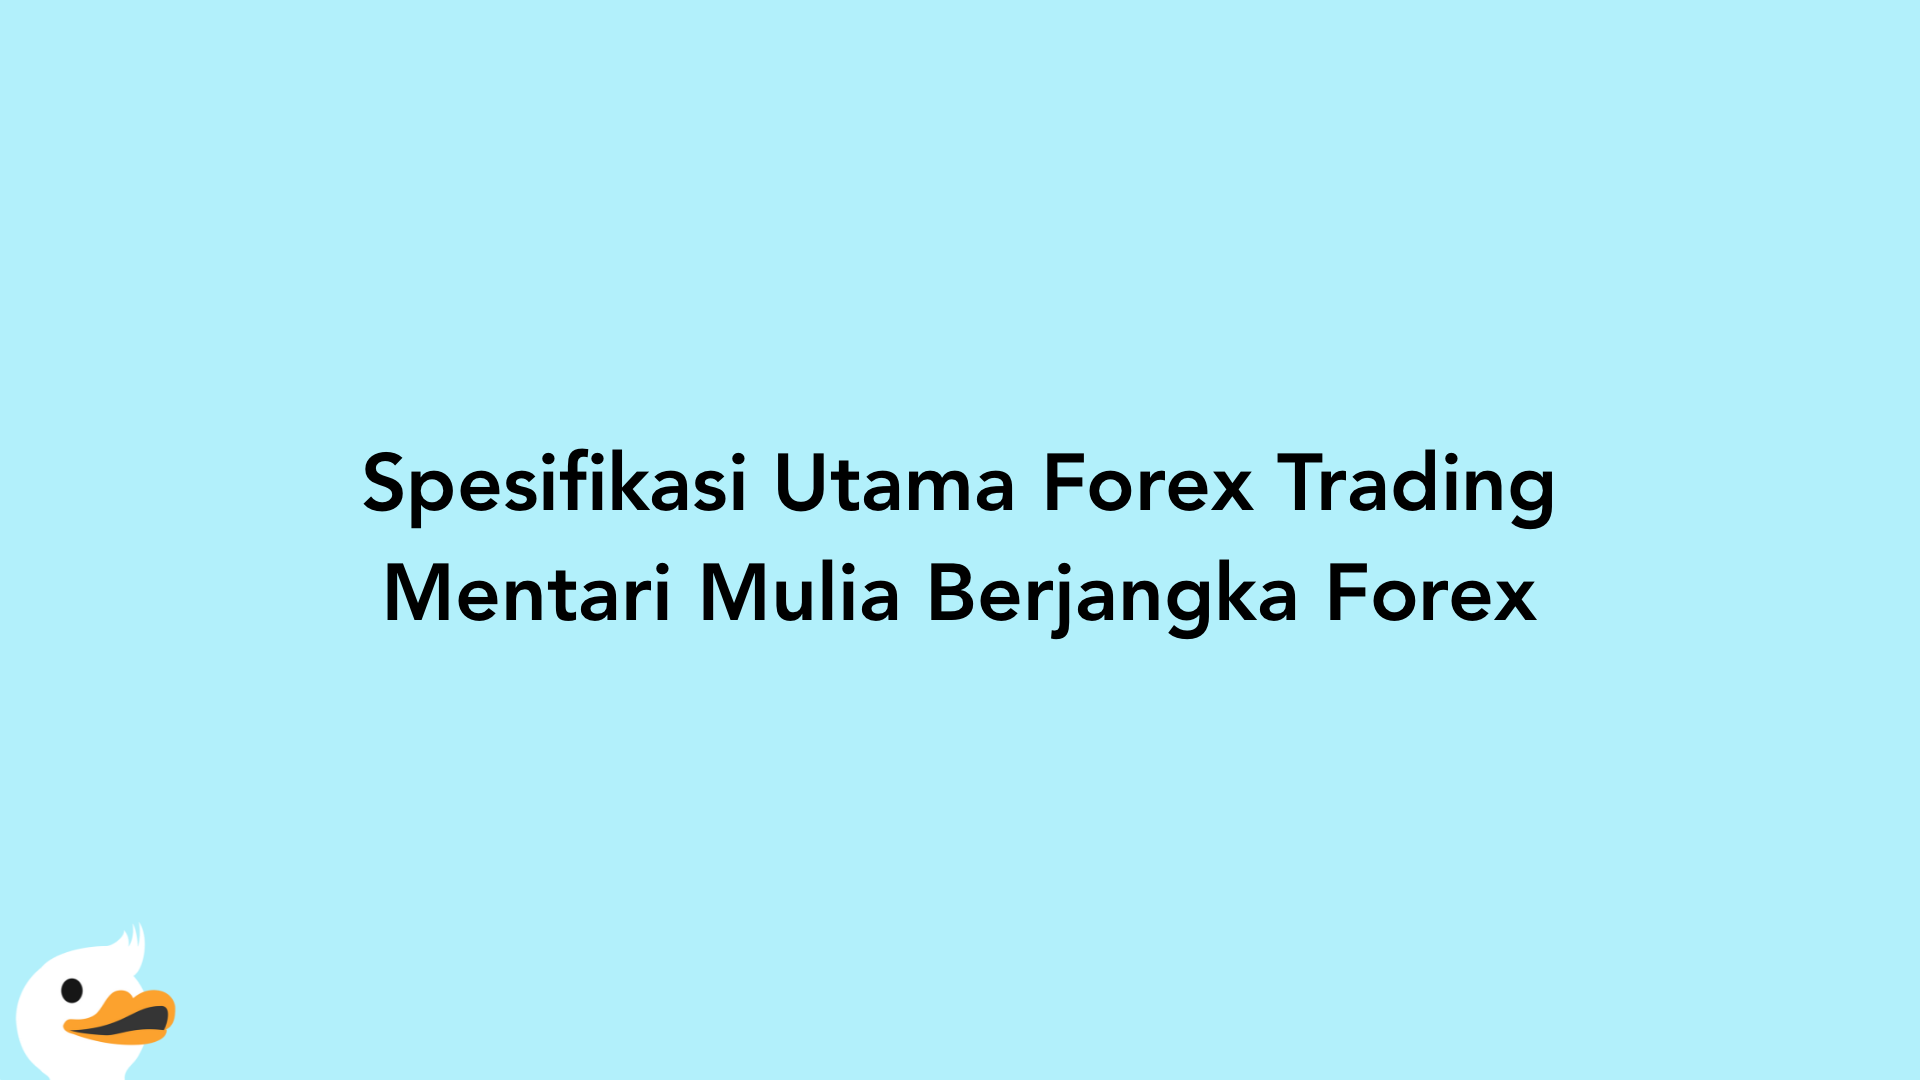 Spesifikasi Utama Forex Trading Mentari Mulia Berjangka Forex